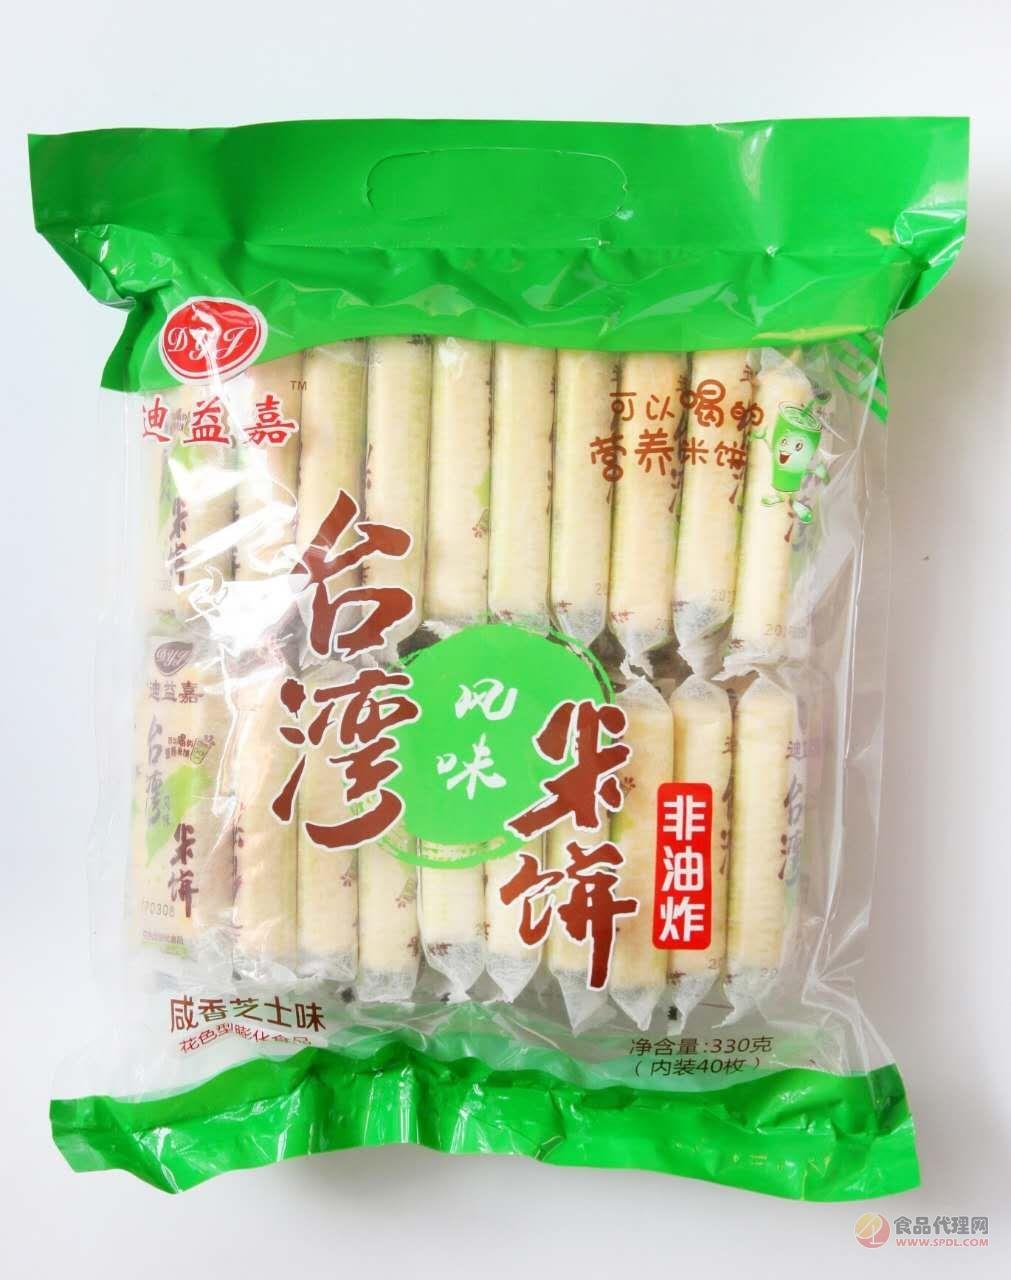 迪益嘉台湾风味米饼330g